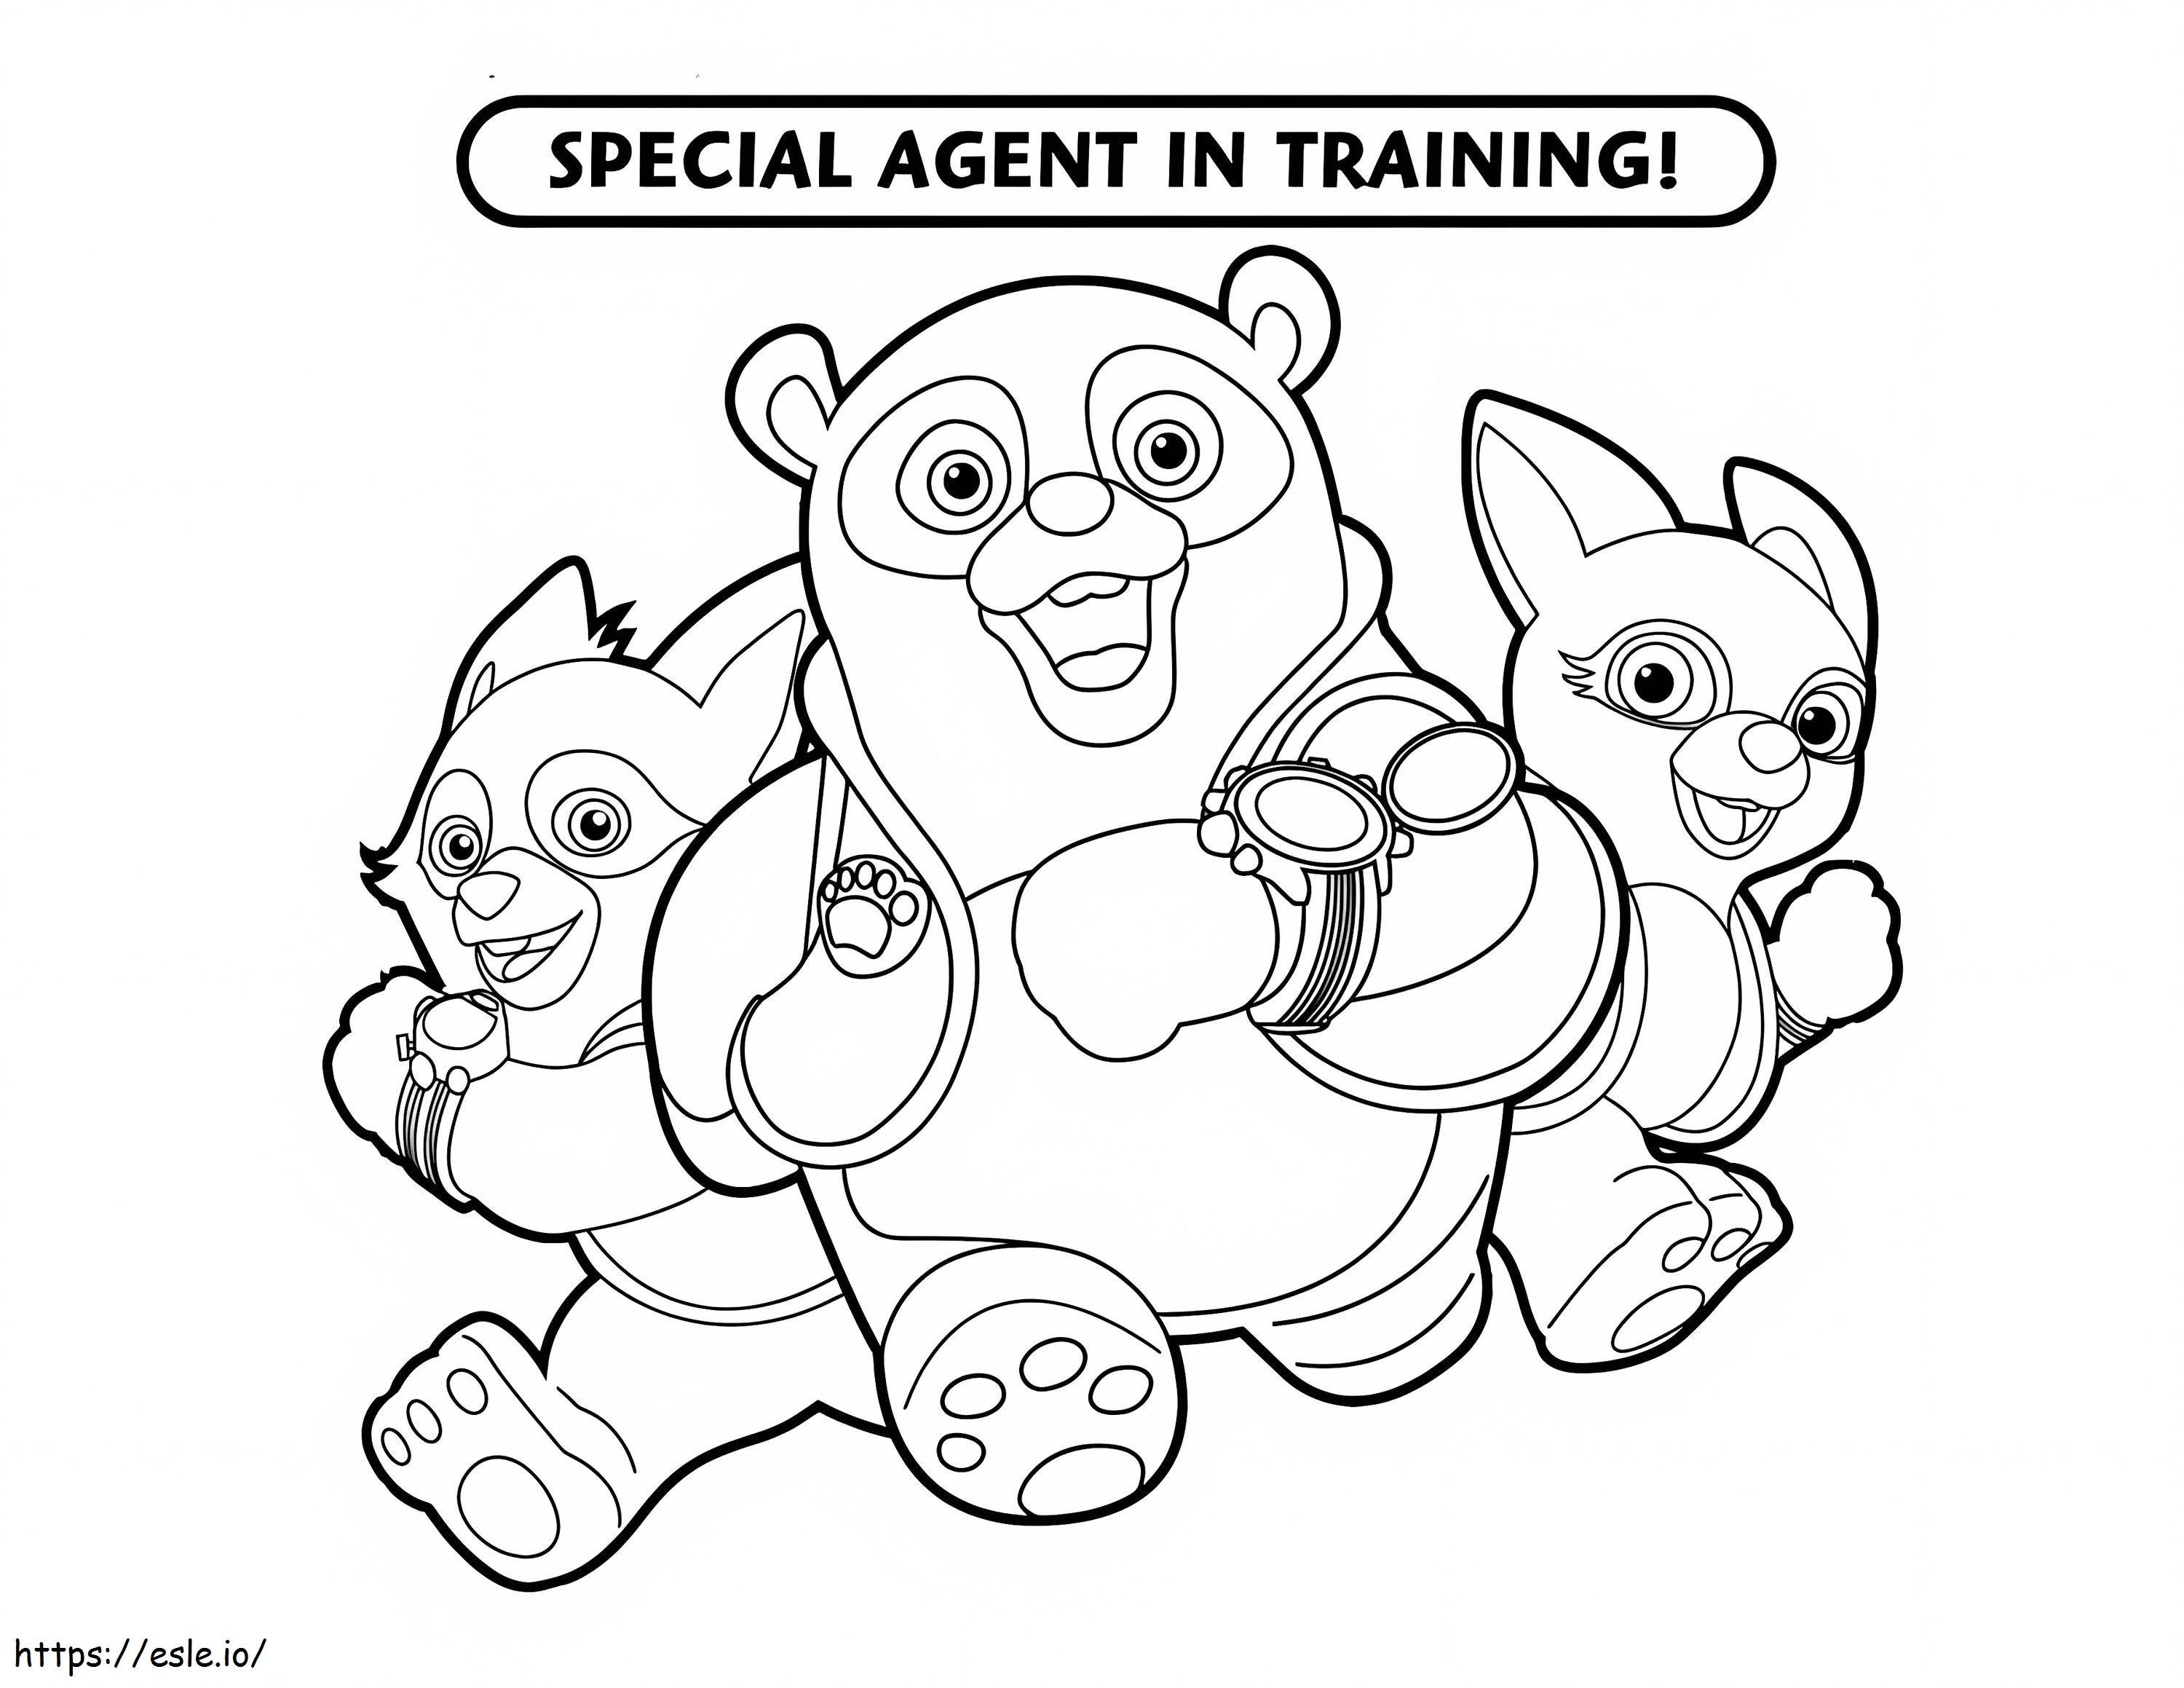 Charaktere von Special Agent Oso ausmalbilder